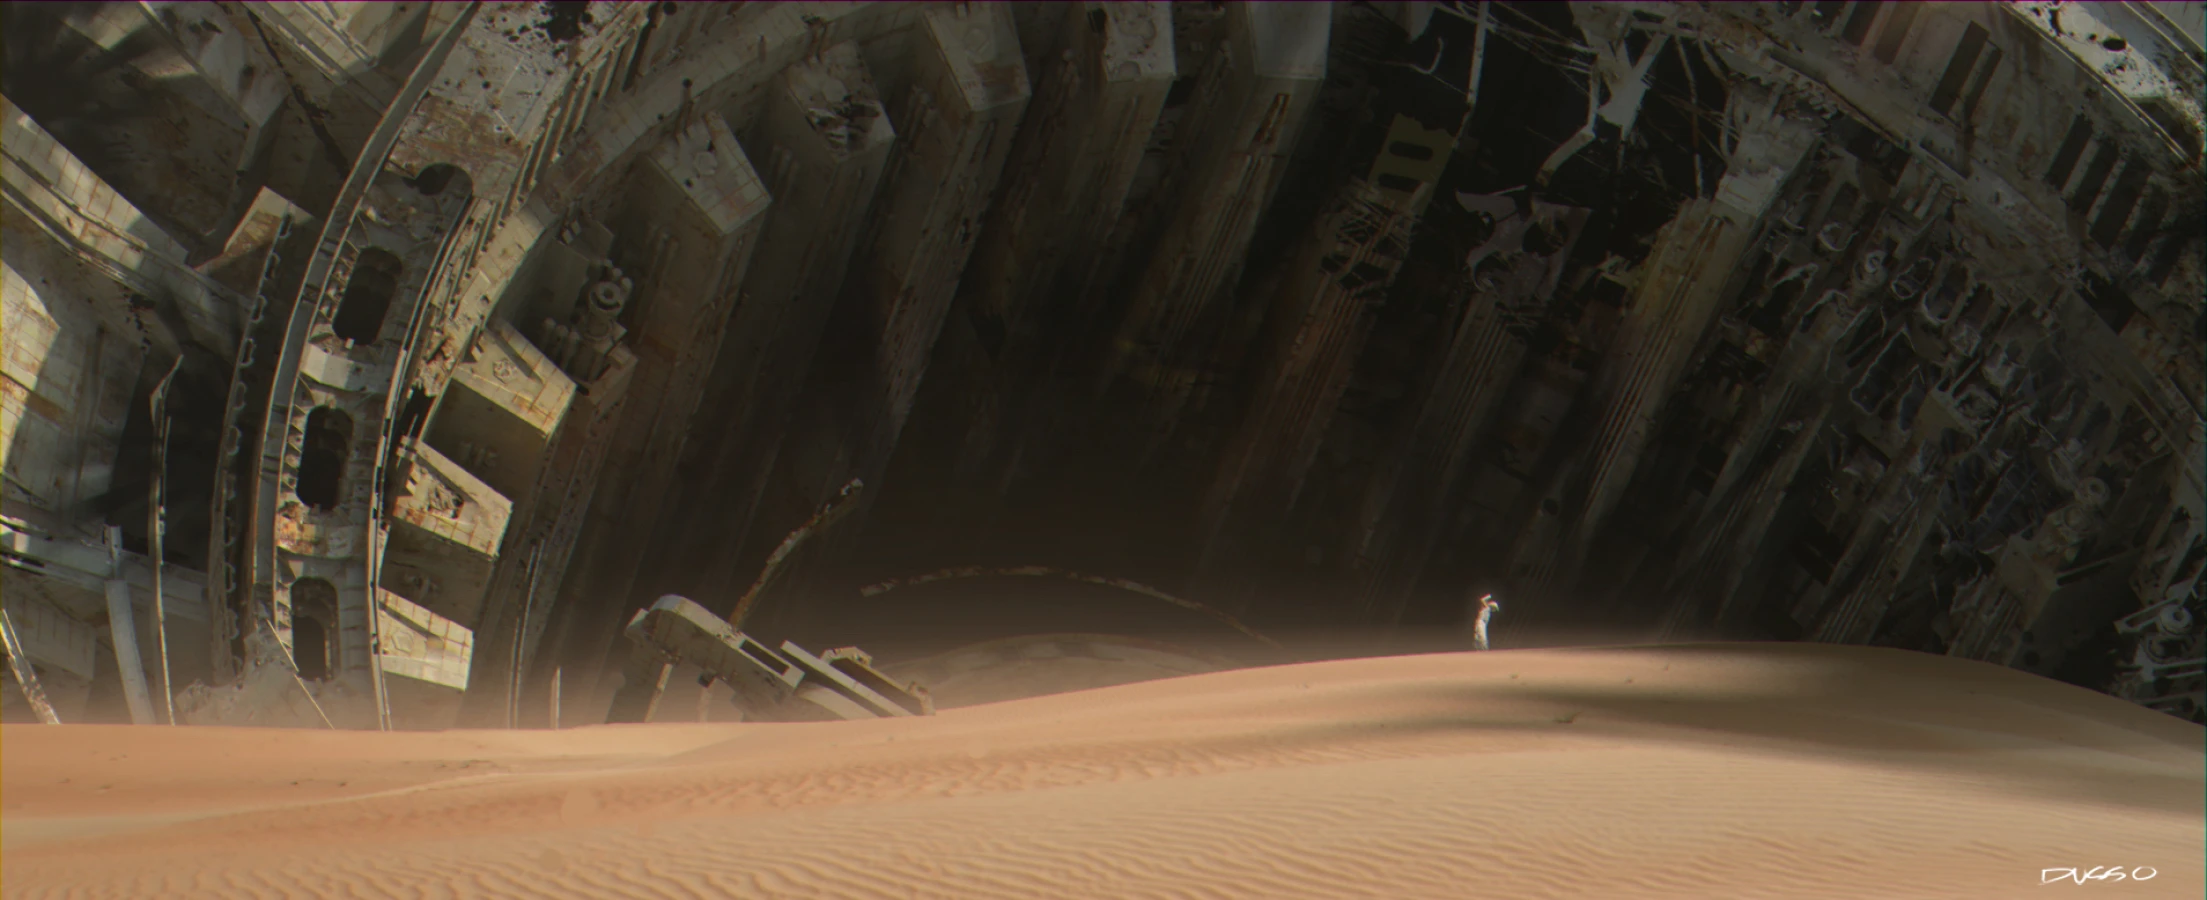  Dusso's concept art : Star wars mothership crashed in desert 